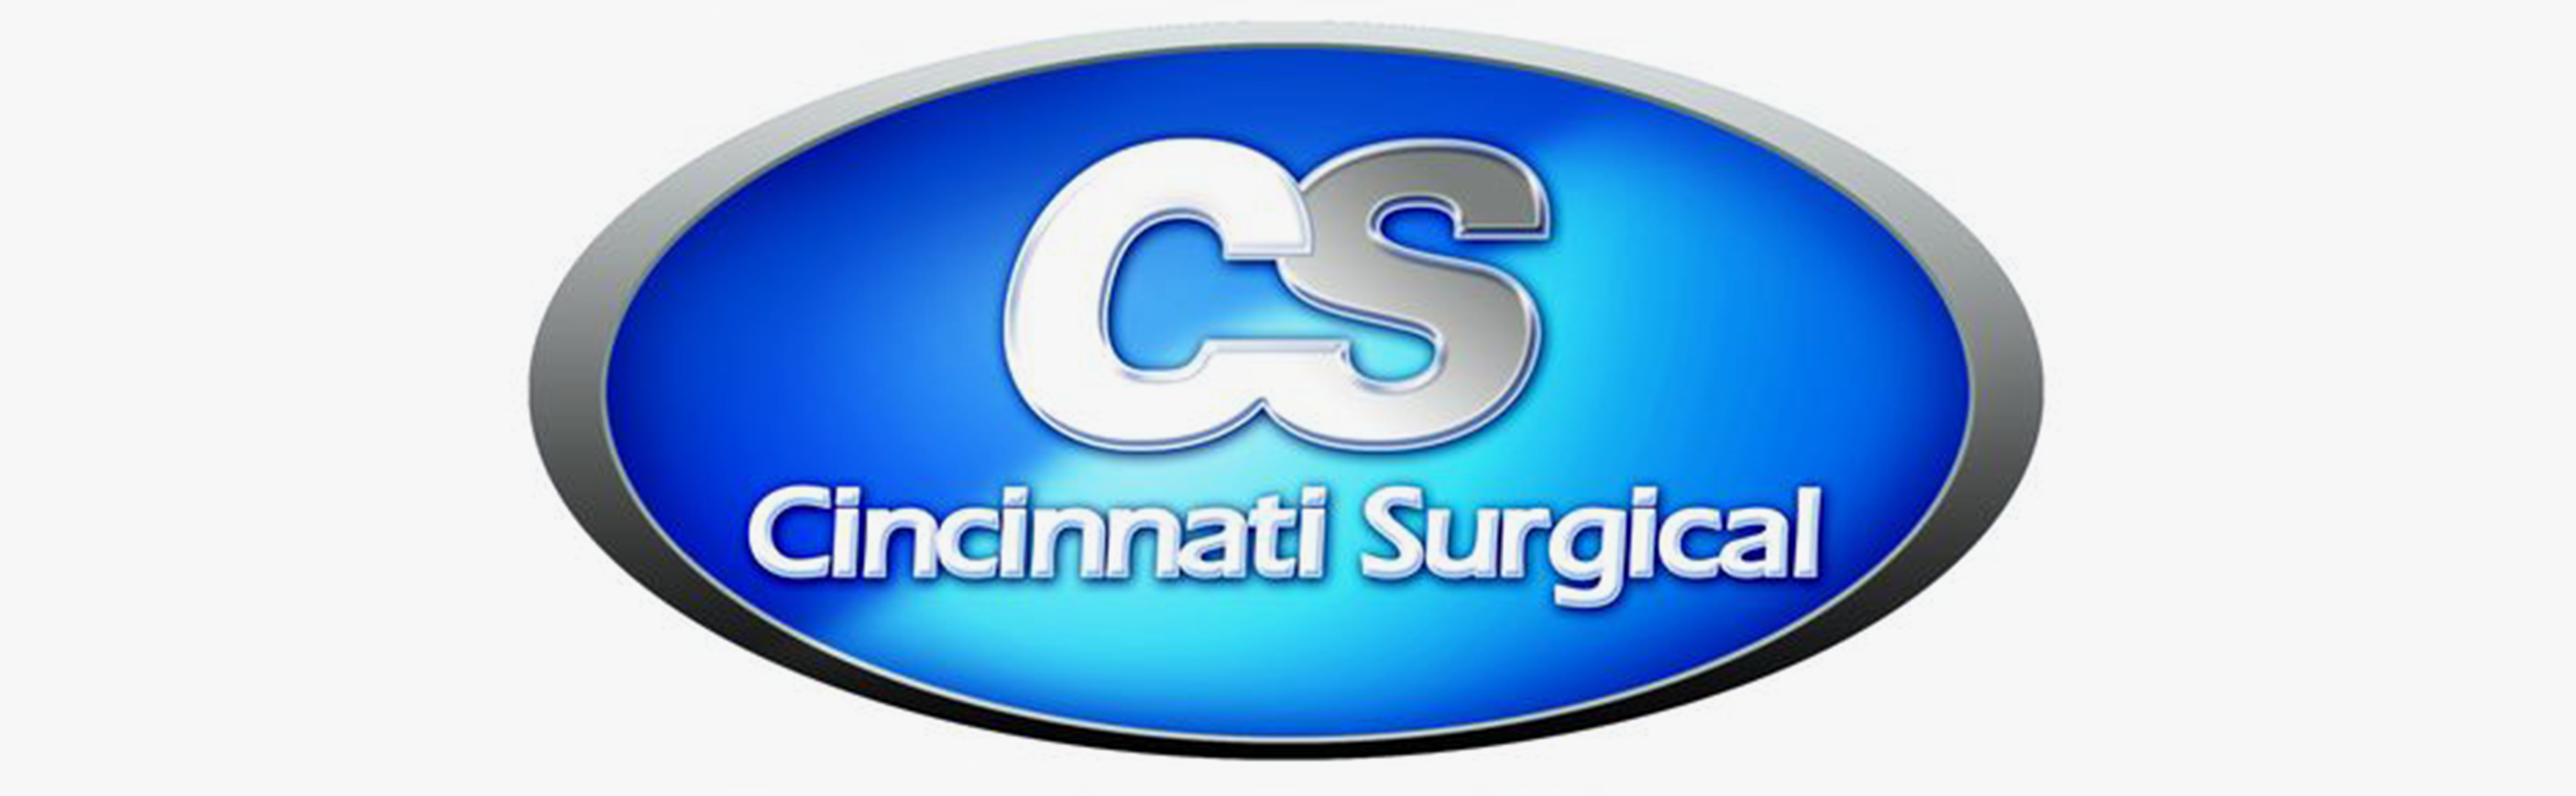 Cincinnati Surgical Company